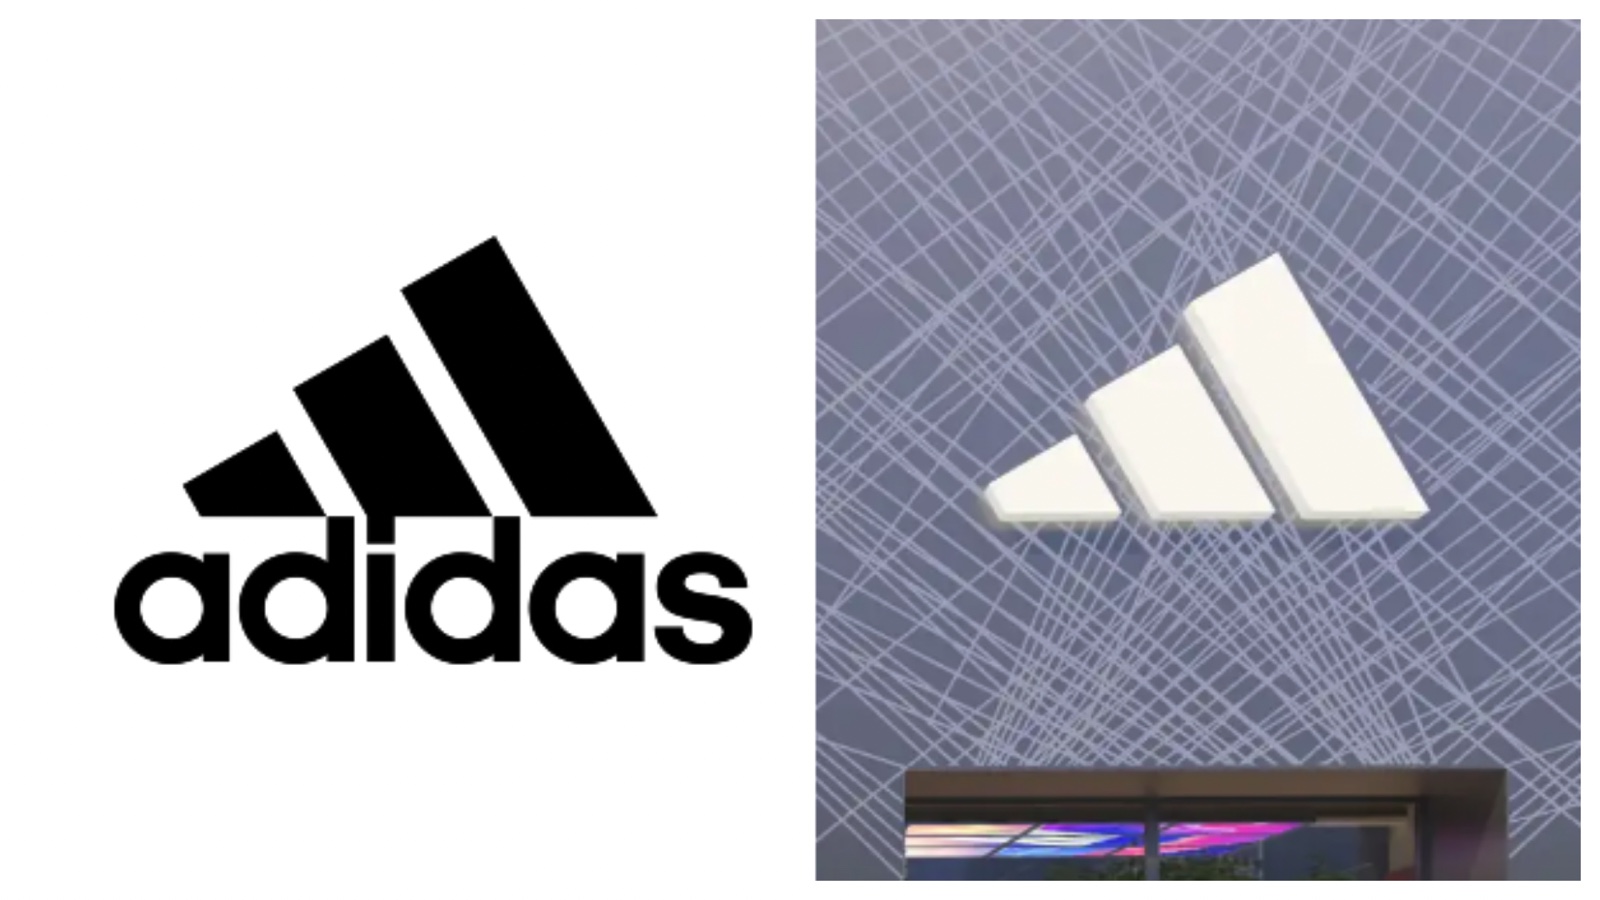 Thiết kế logo Adidas mới - Đừng bỏ lỡ cơ hội chiêm ngưỡng logo mới của thương hiệu Adidas. Hình ảnh liên quan sẽ cho bạn thấy một thiết kế logo Adidas mới sáng tạo và tươi trẻ hơn, mang đến cảm giác mới mẻ và hiện đại.